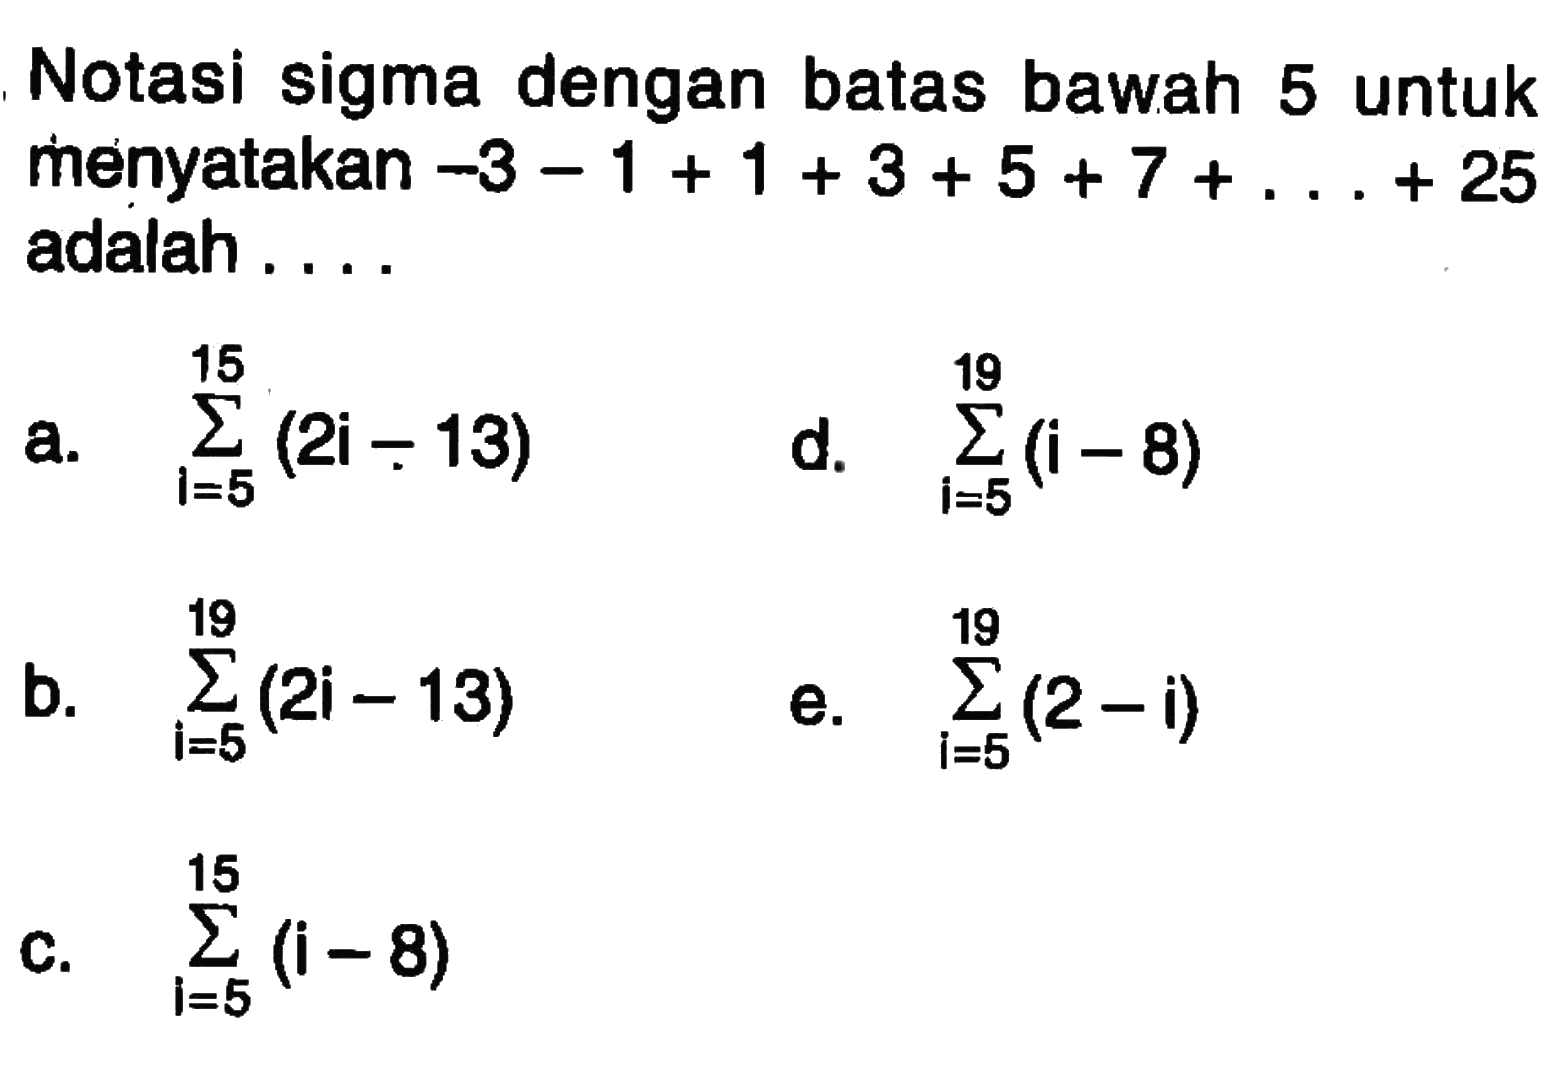 Notasi sigma dengan batas bawah 5 untuk menyatakan -3-1+1+3+5+7+...+25 adalah ....